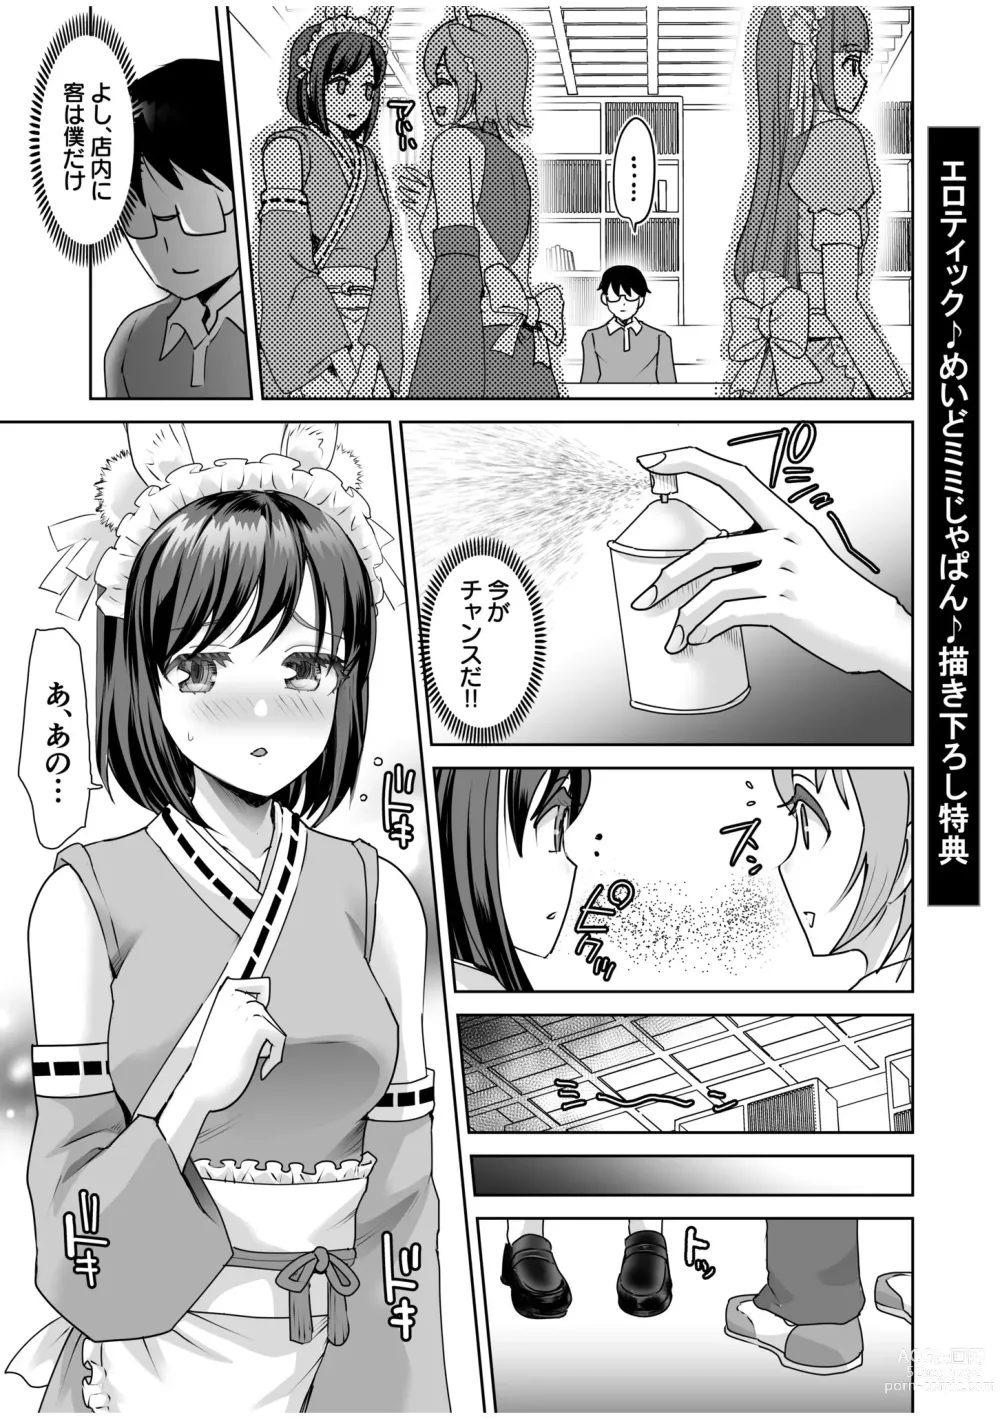 Page 215 of manga Erotic Maid Mimi Japan